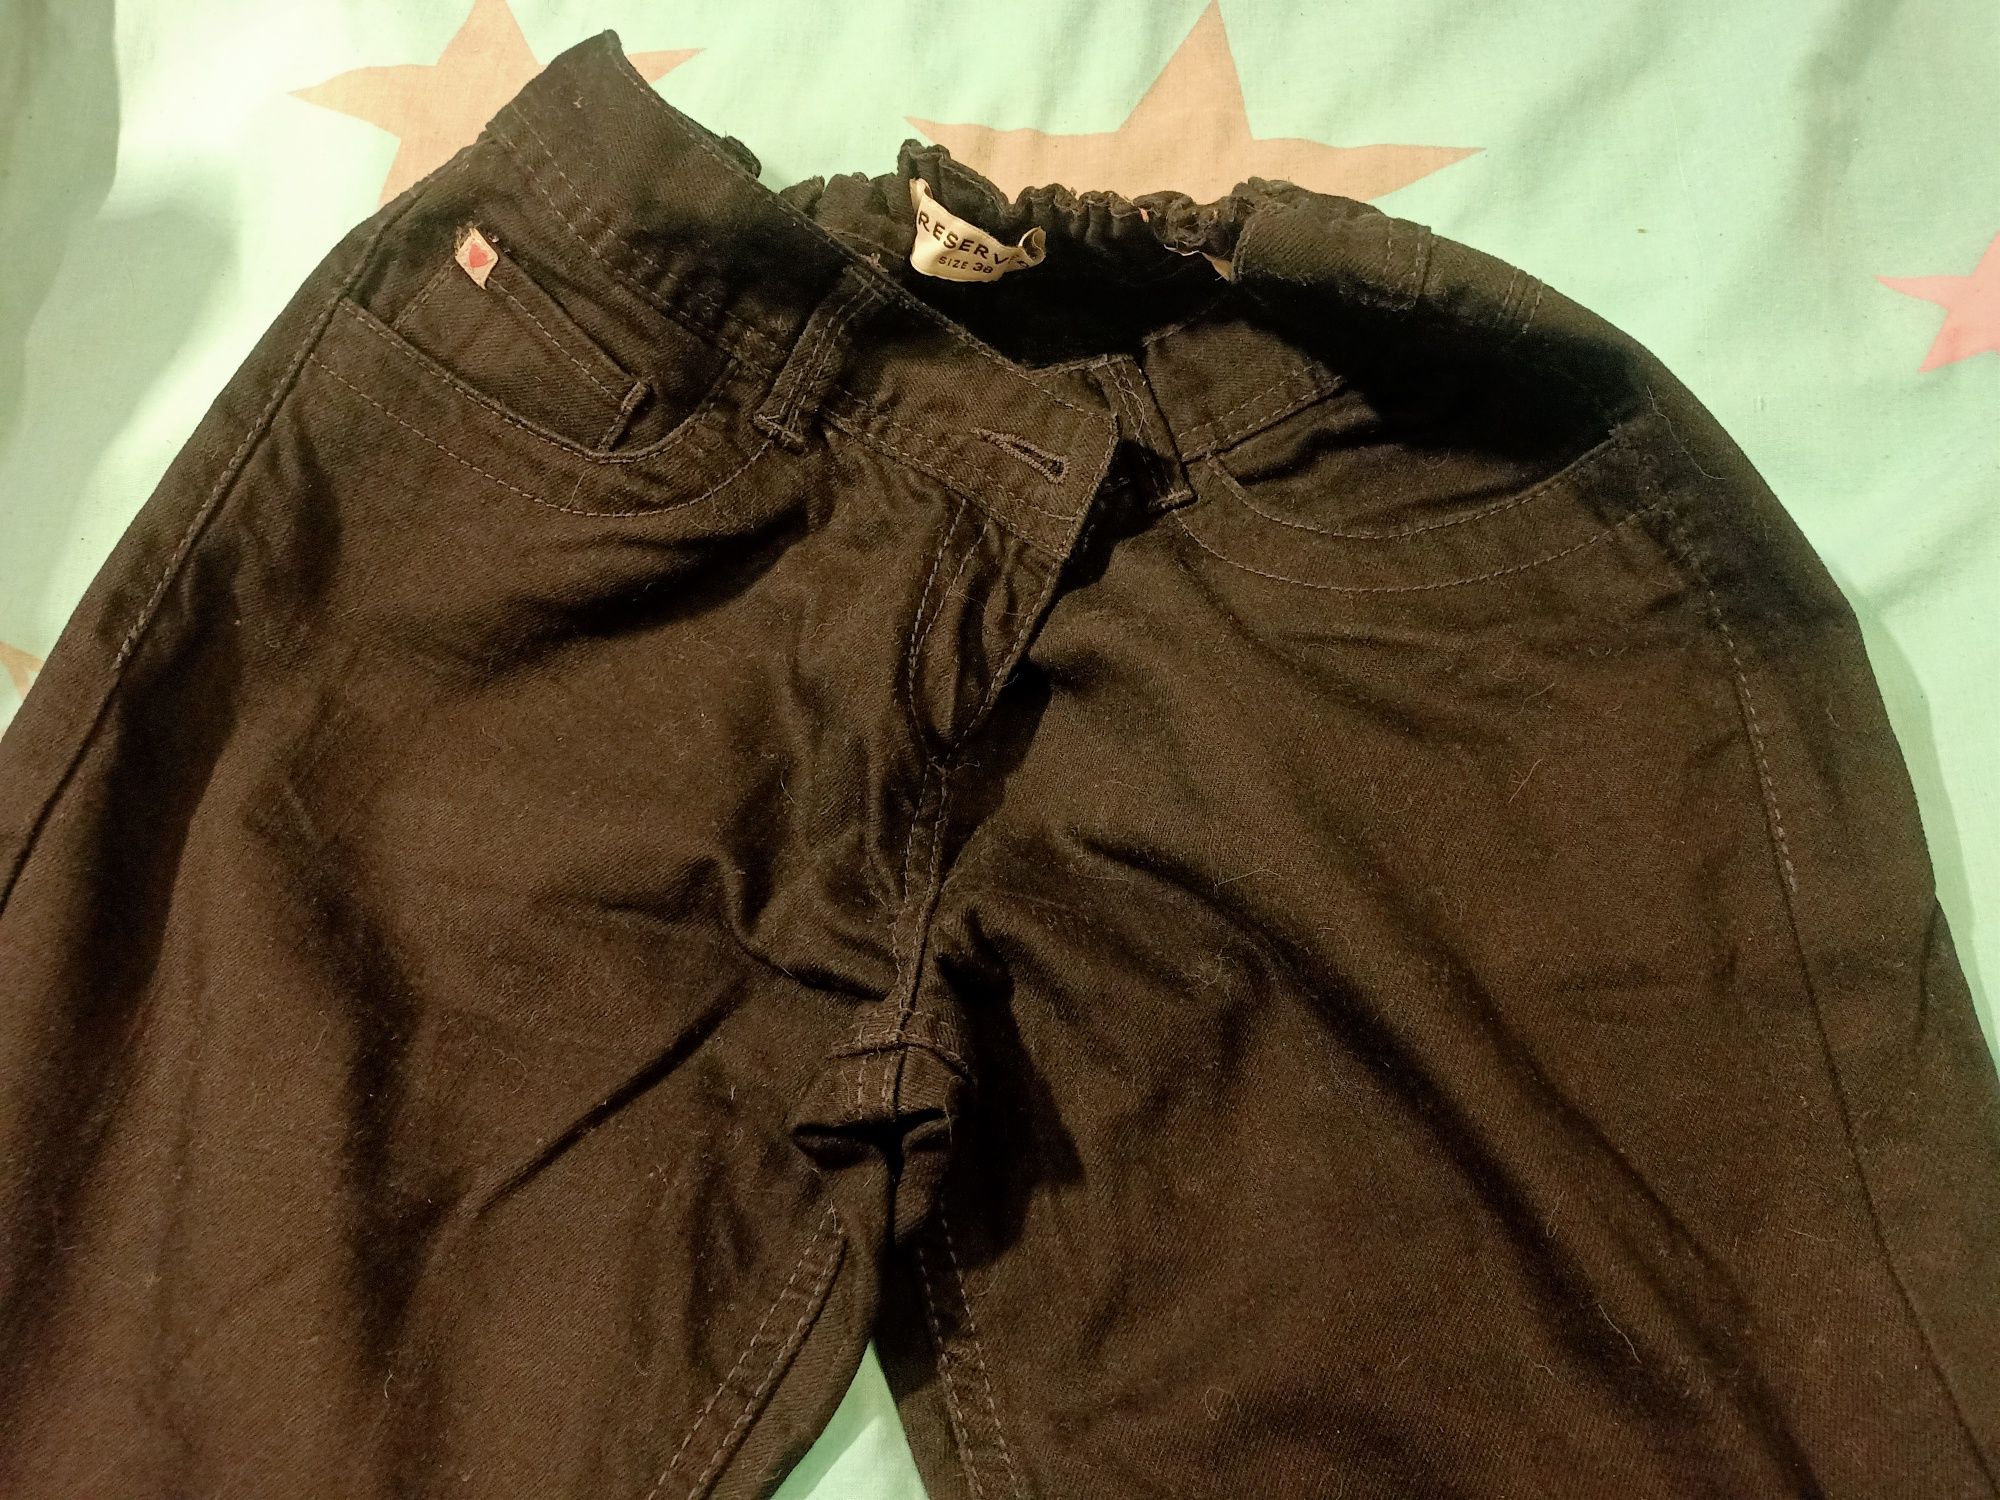 Легкі джинсові брюки чорні штани чоловічі, р.- 38.